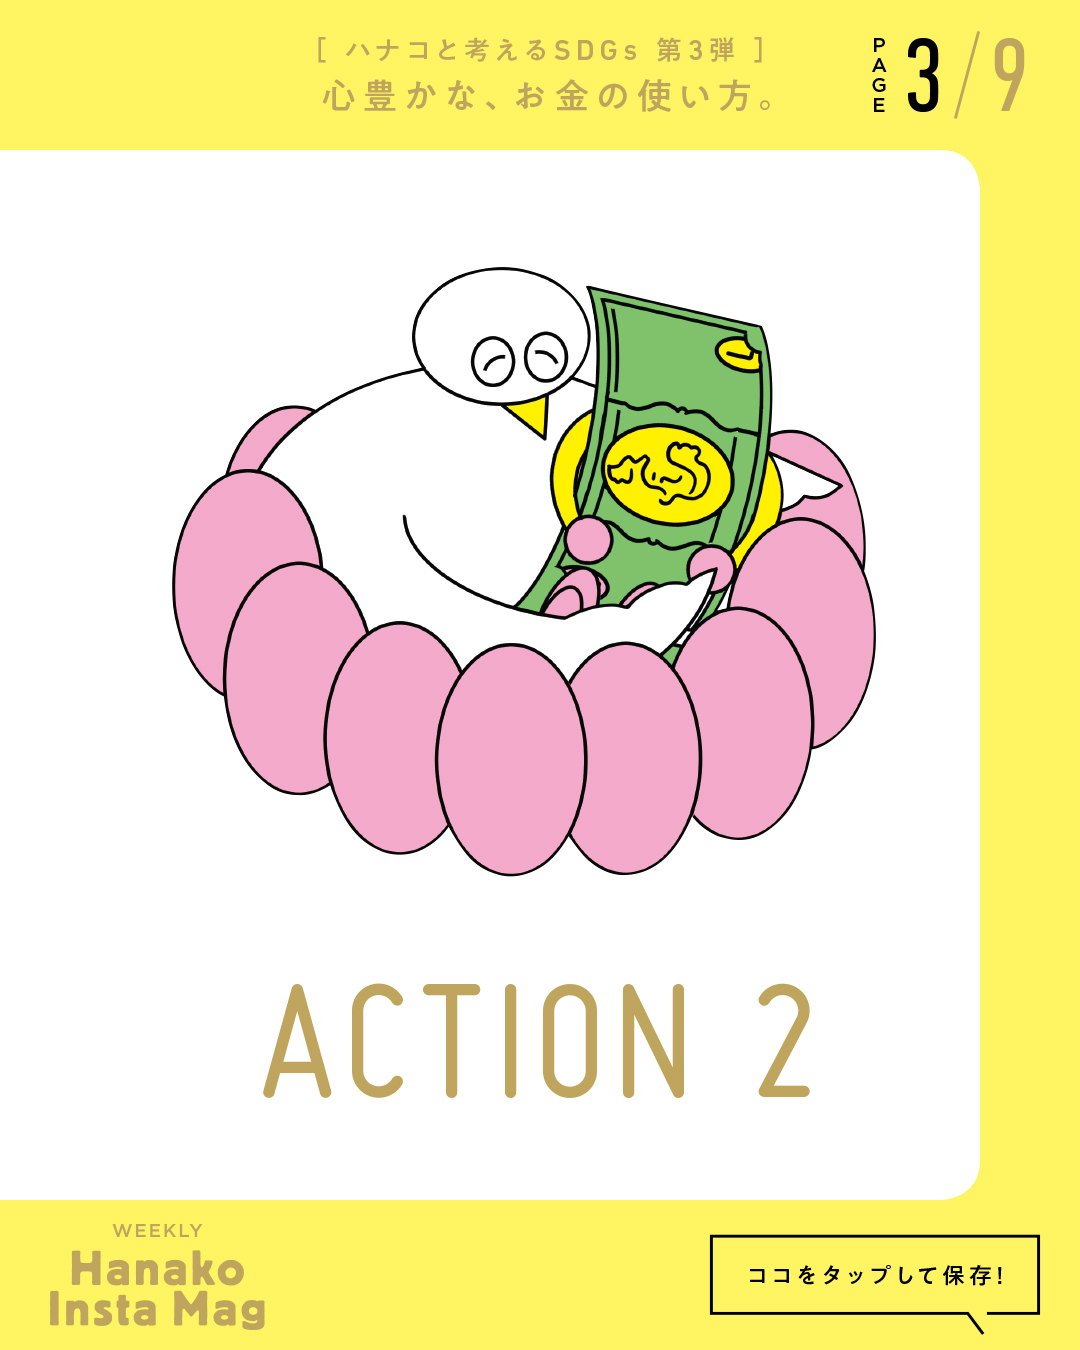 SDGs#3_sekai_action#2-3